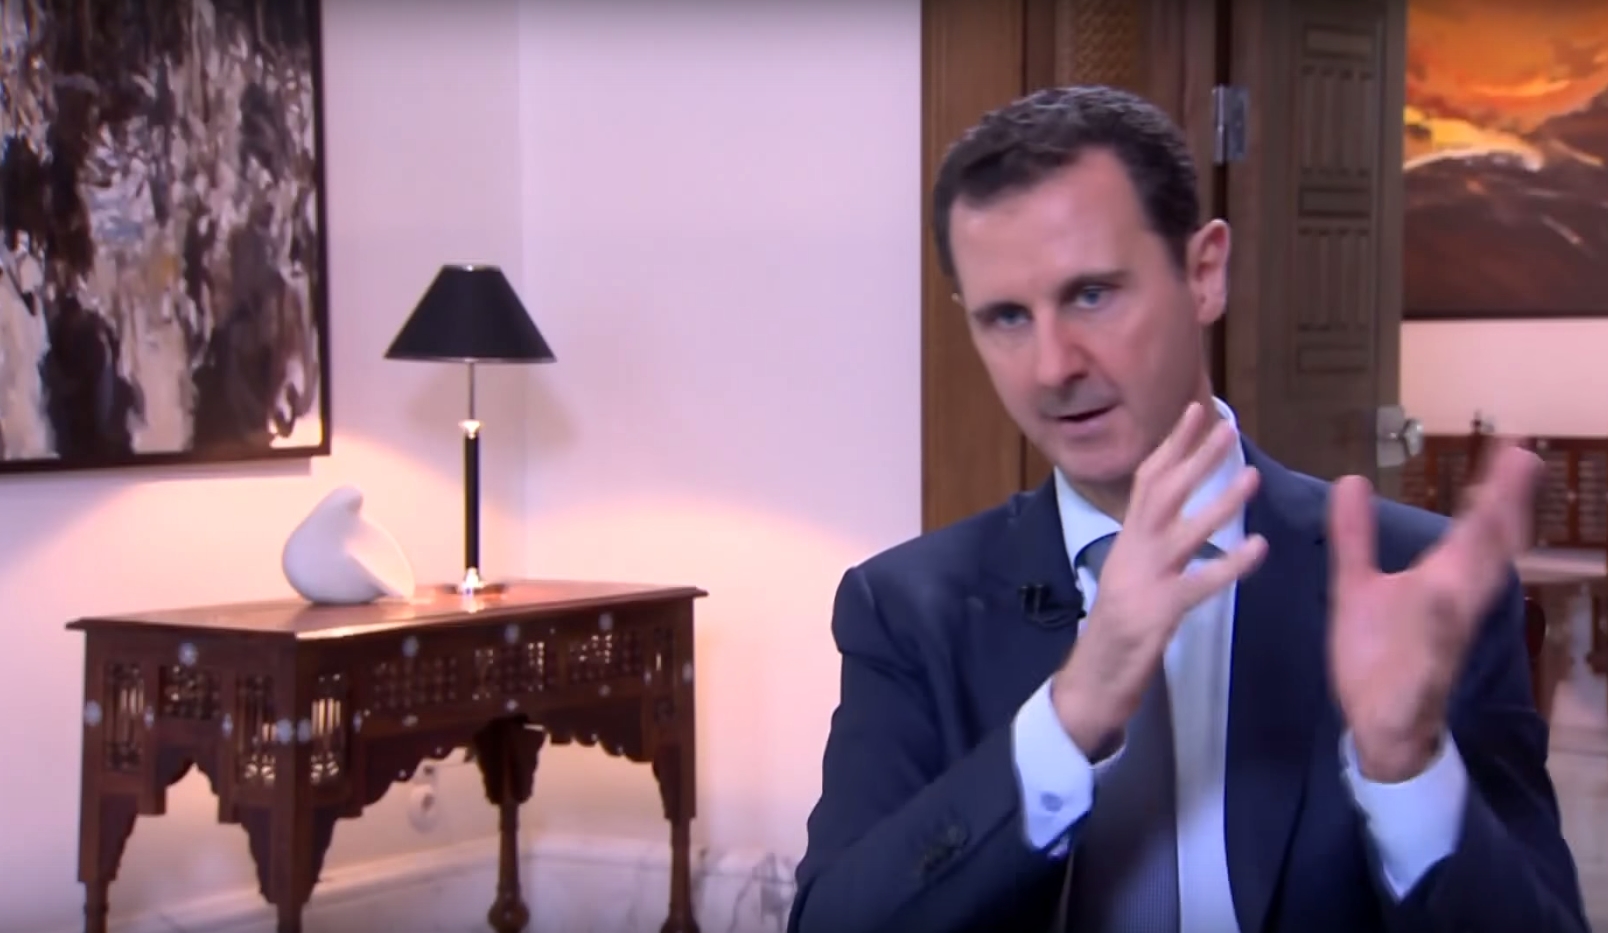 Reprodução/ Youtube/Syrian Presidency